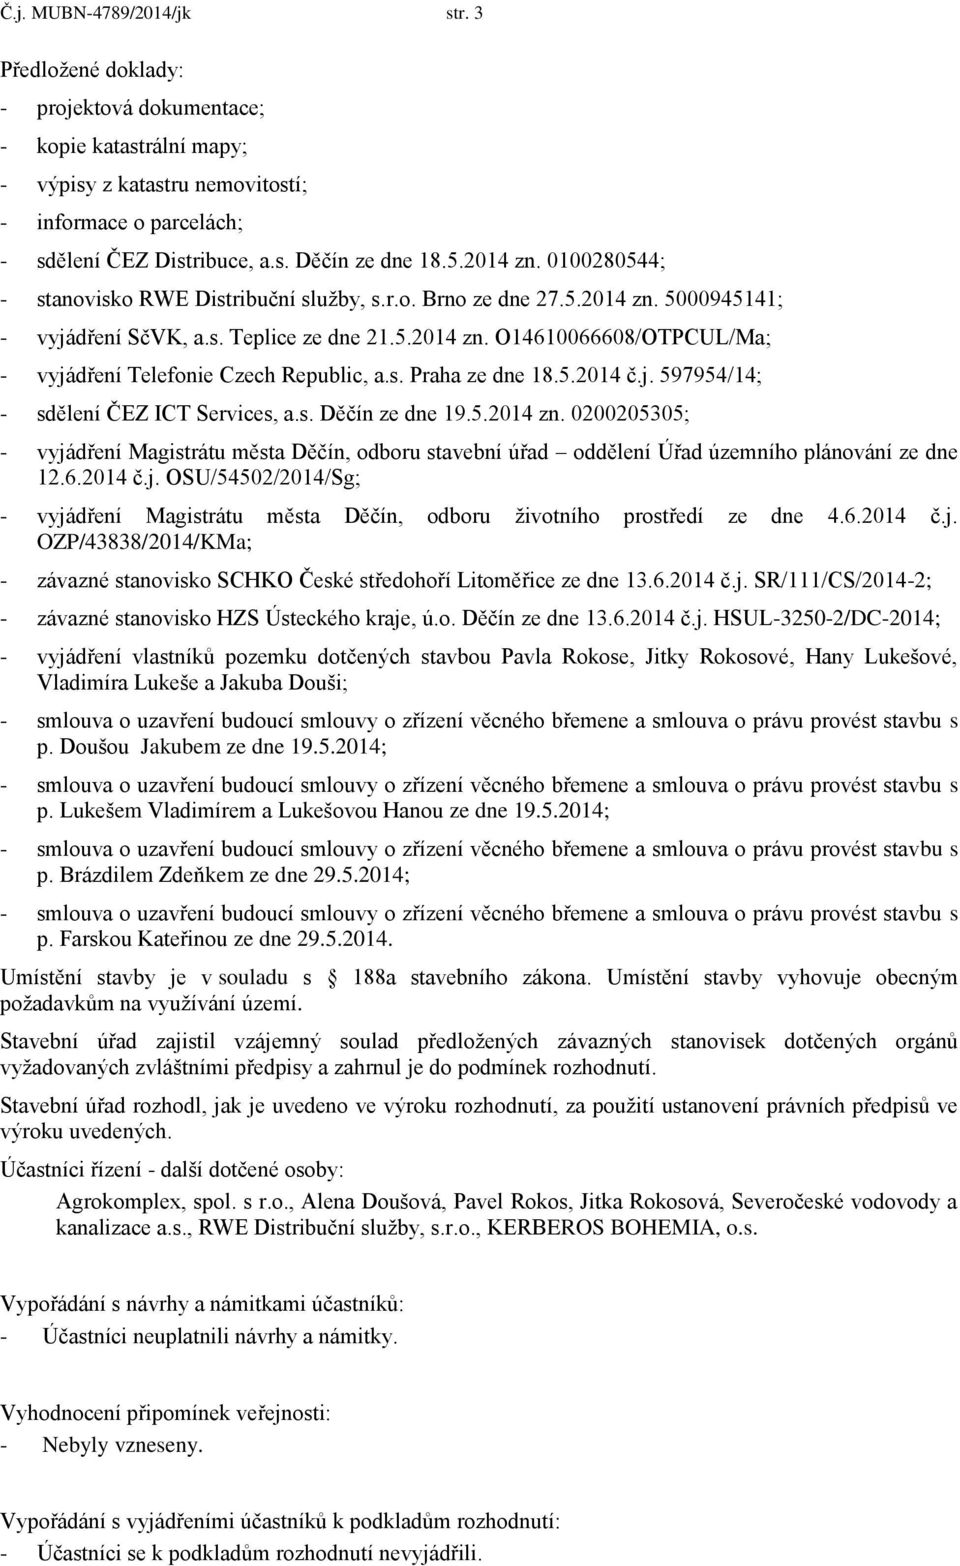 s. Praha ze dne 18.5.2014 č.j. 597954/14; - sdělení ČEZ ICT Services, a.s. Děčín ze dne 19.5.2014 zn.